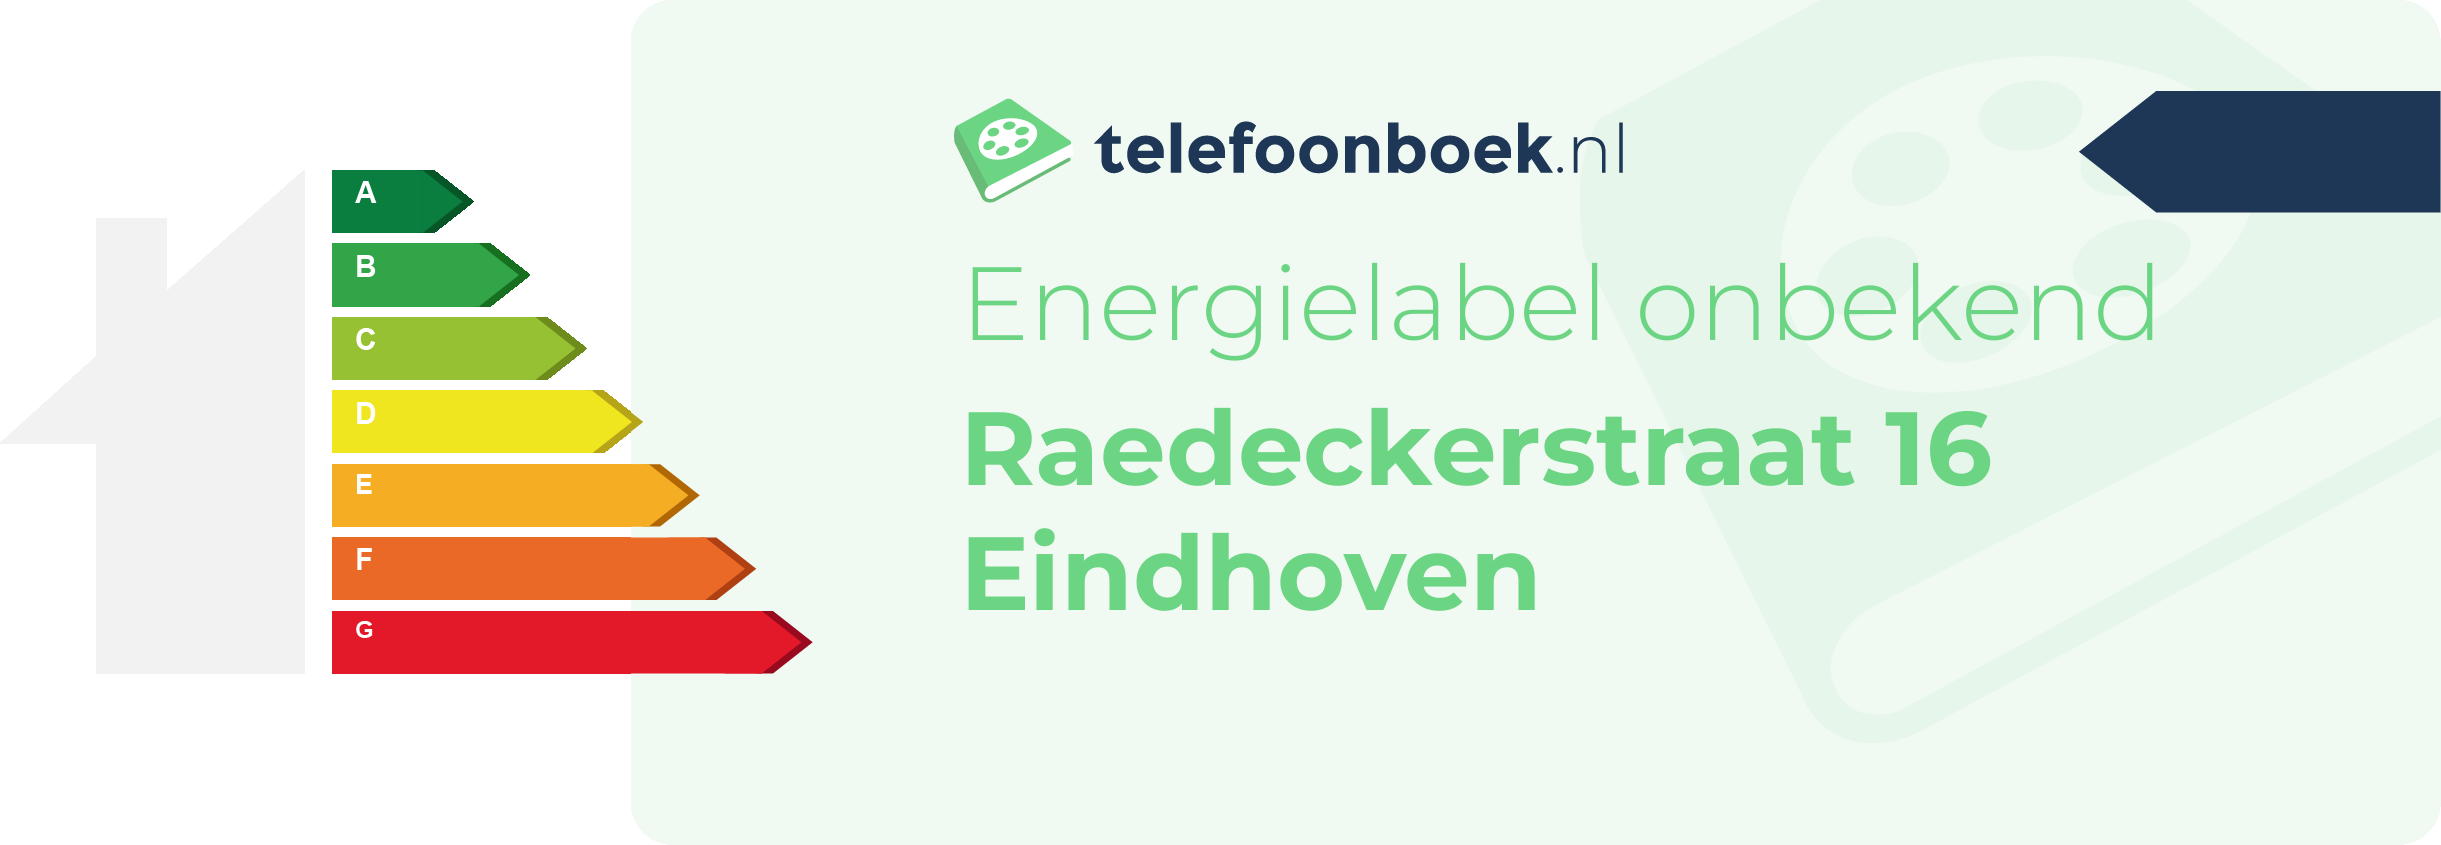 Energielabel Raedeckerstraat 16 Eindhoven